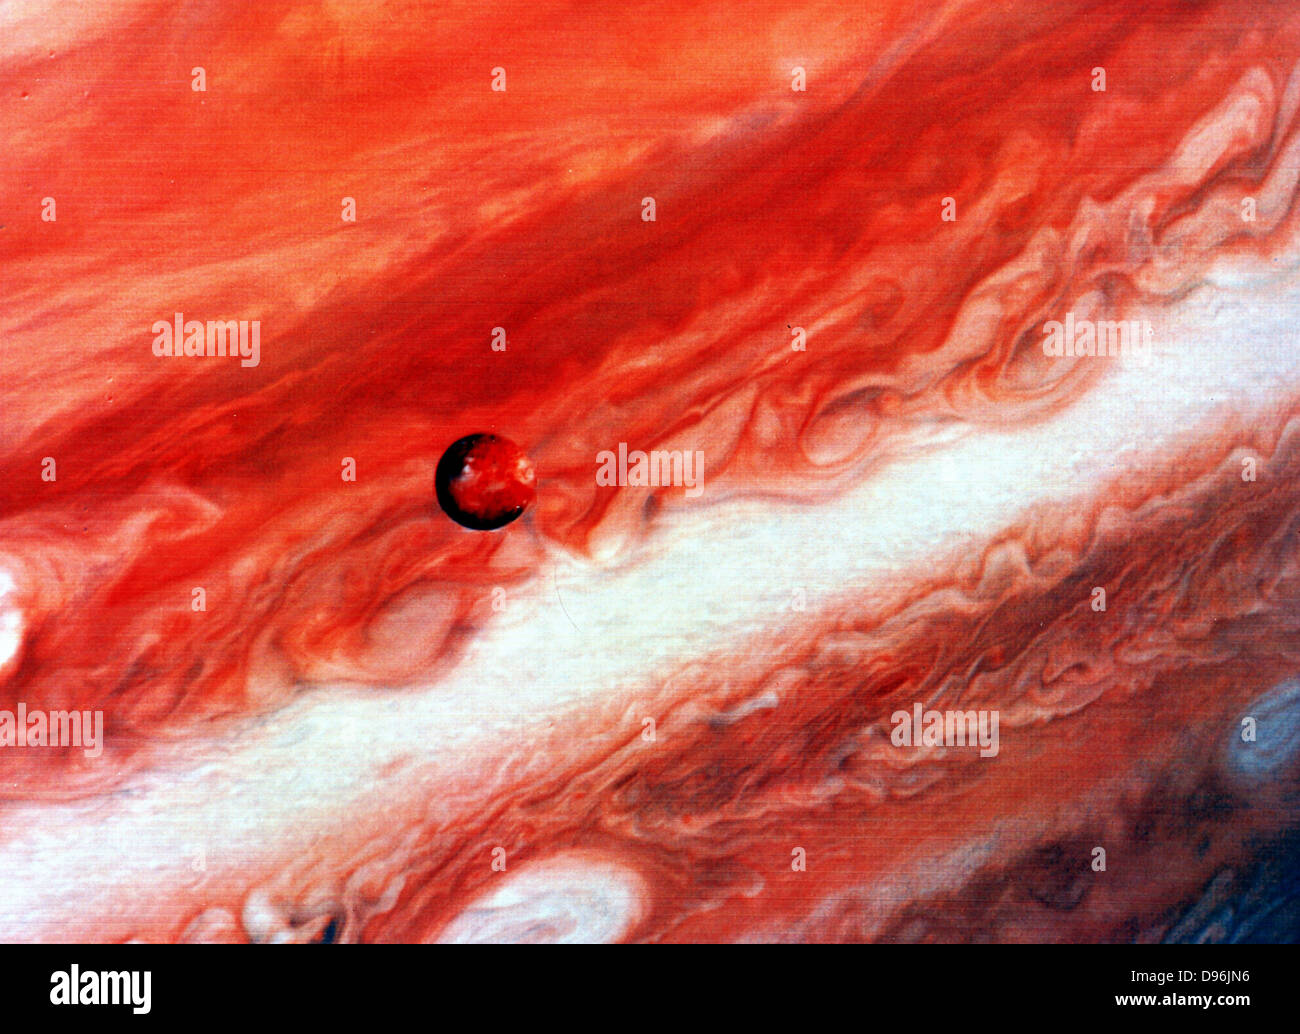 Mosaico de Júpiter y su satélite interior lo. Fotografía de la NASA. Foto de stock